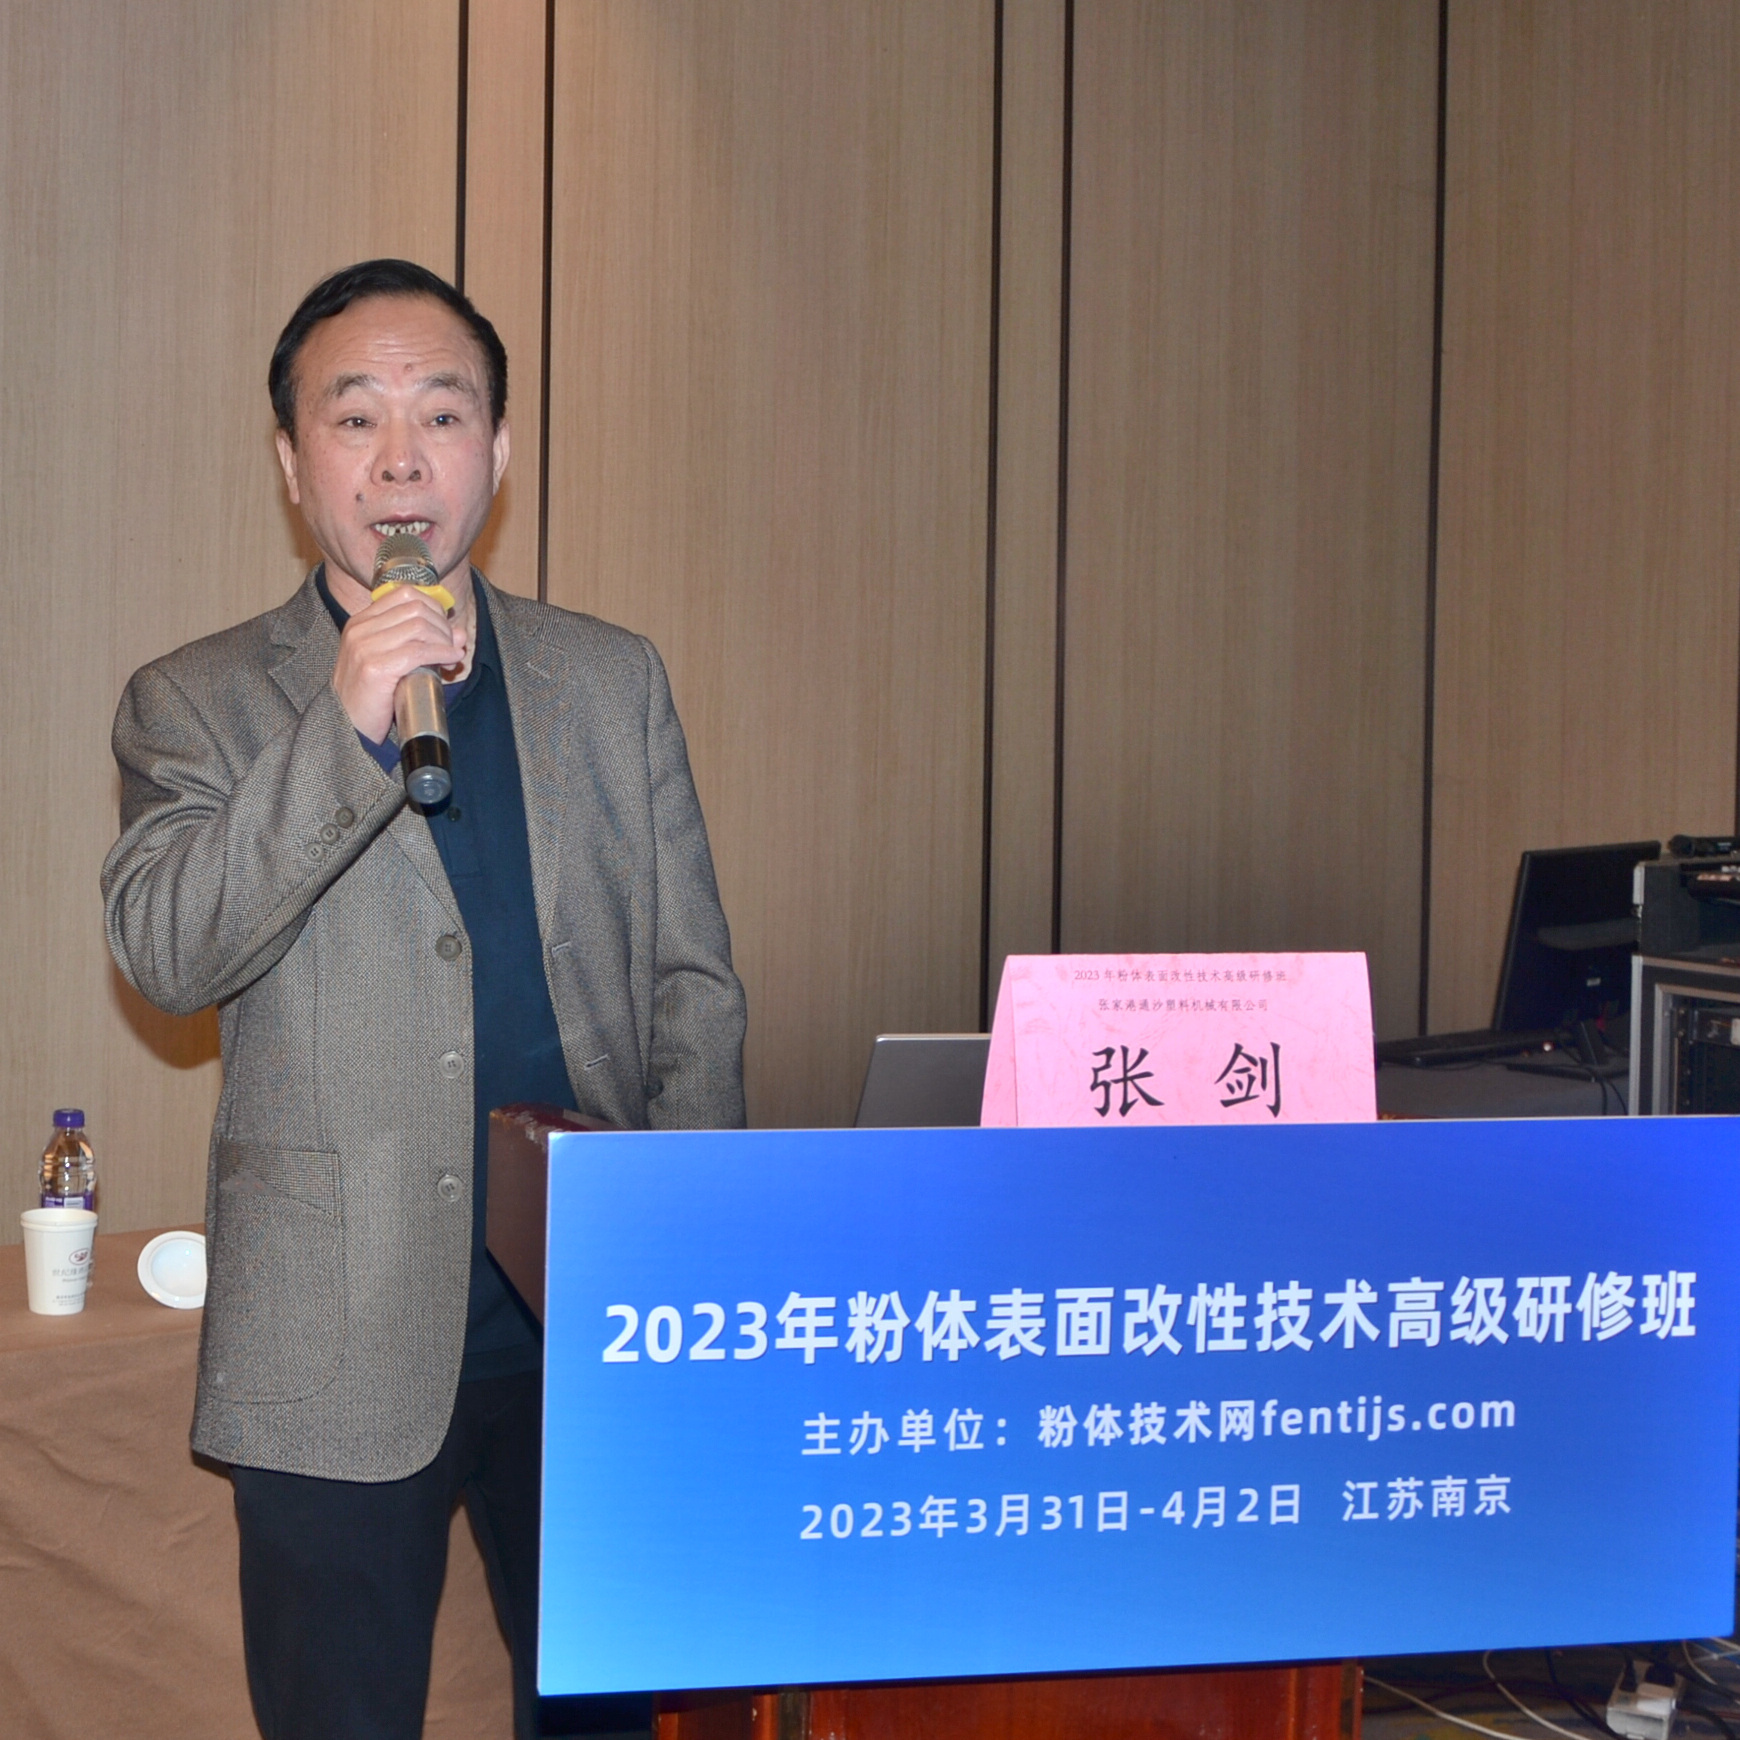 2023年粉体表面改性技术高级研修班在南京成功举办！ 　　 　　　 　　